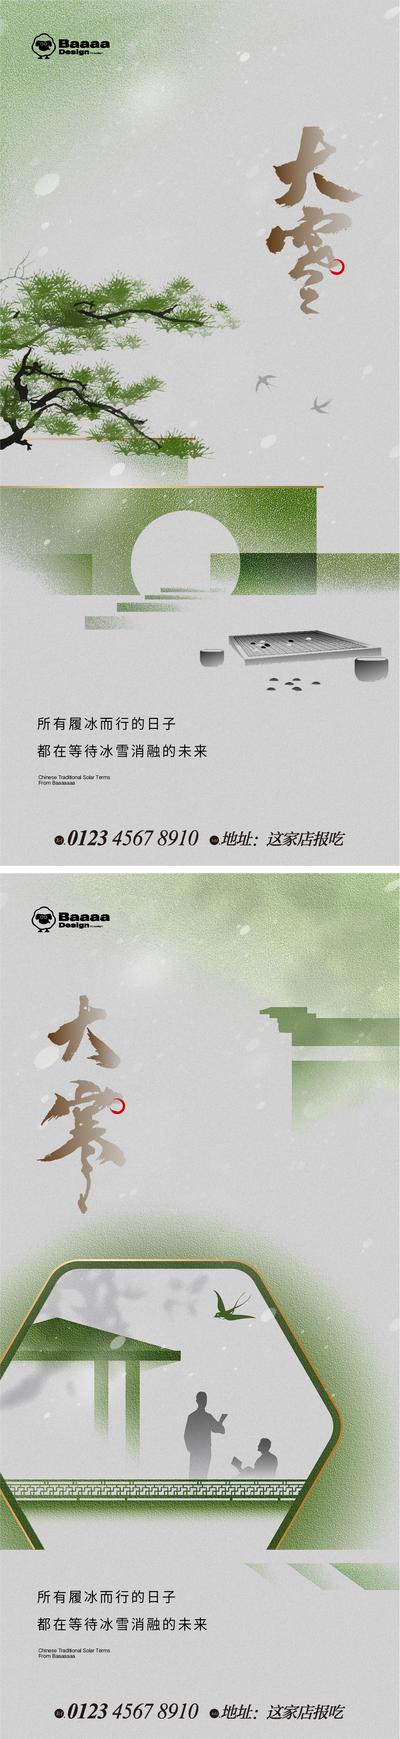 南门网 广告 中式 系列 大雪 冬至 小寒 大寒 雪 笔触 毛笔字 新中式 庭院 背景 大气 刷屏 价值